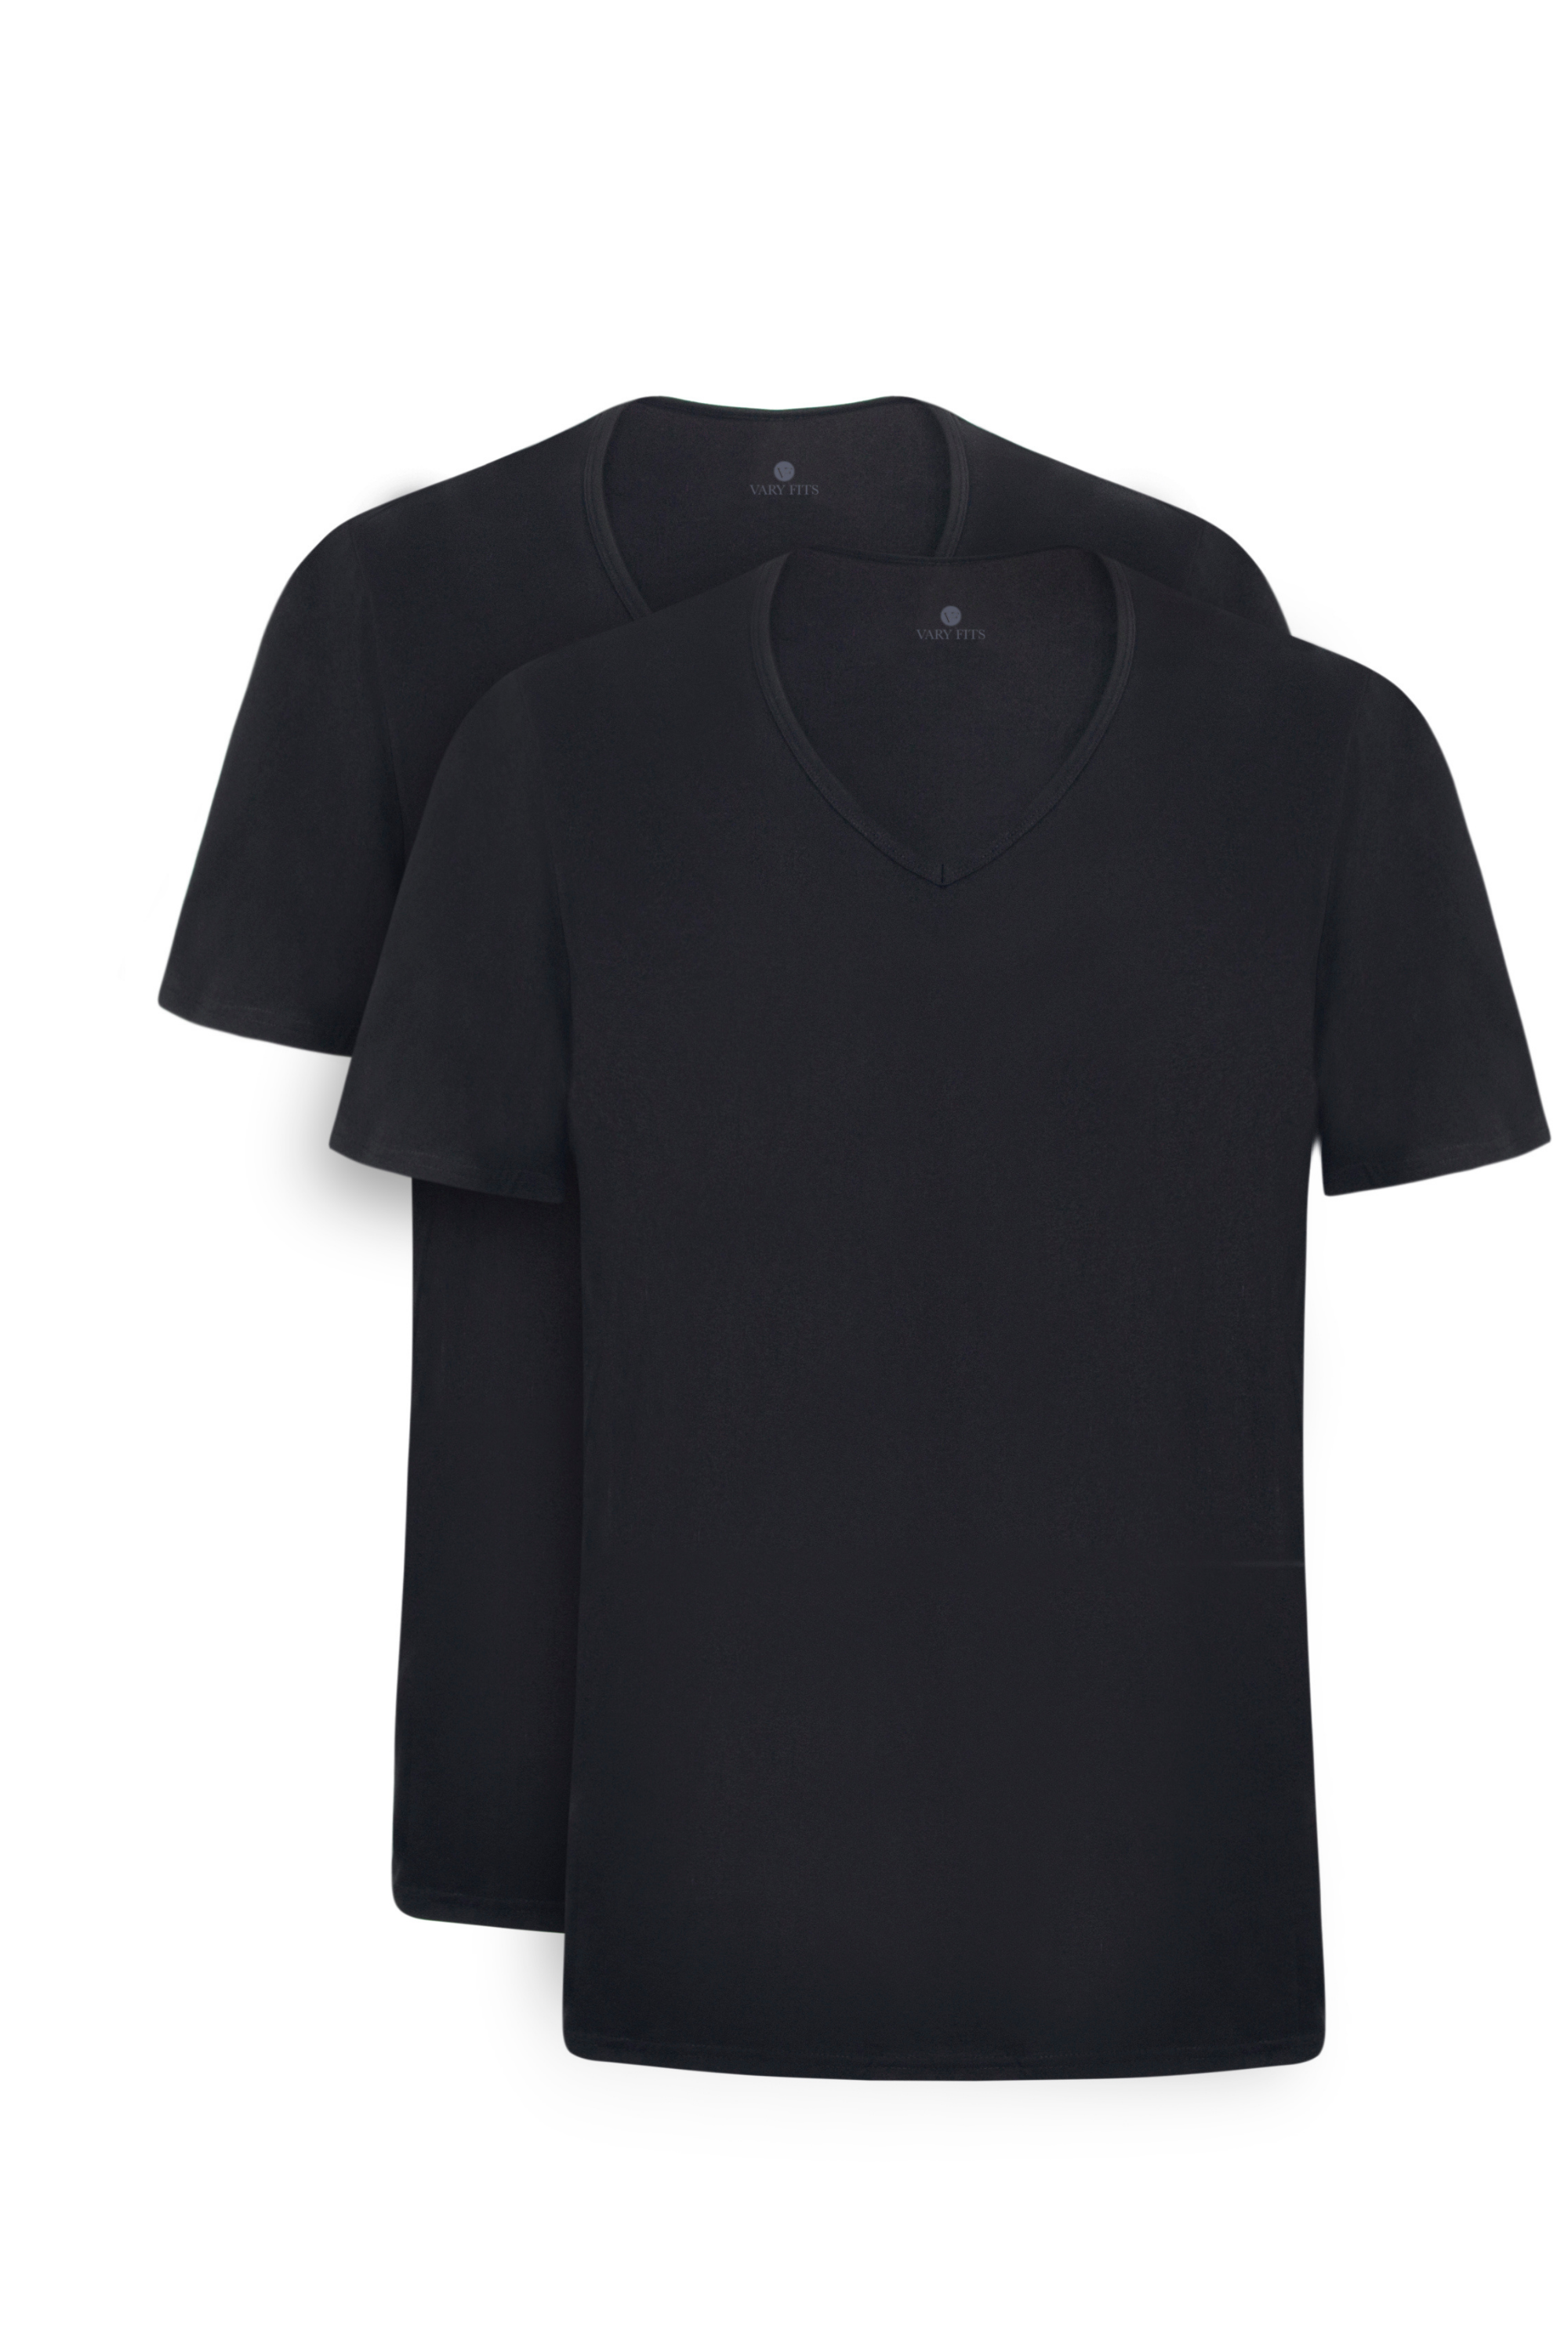 v neck slim fit long t-shirt black